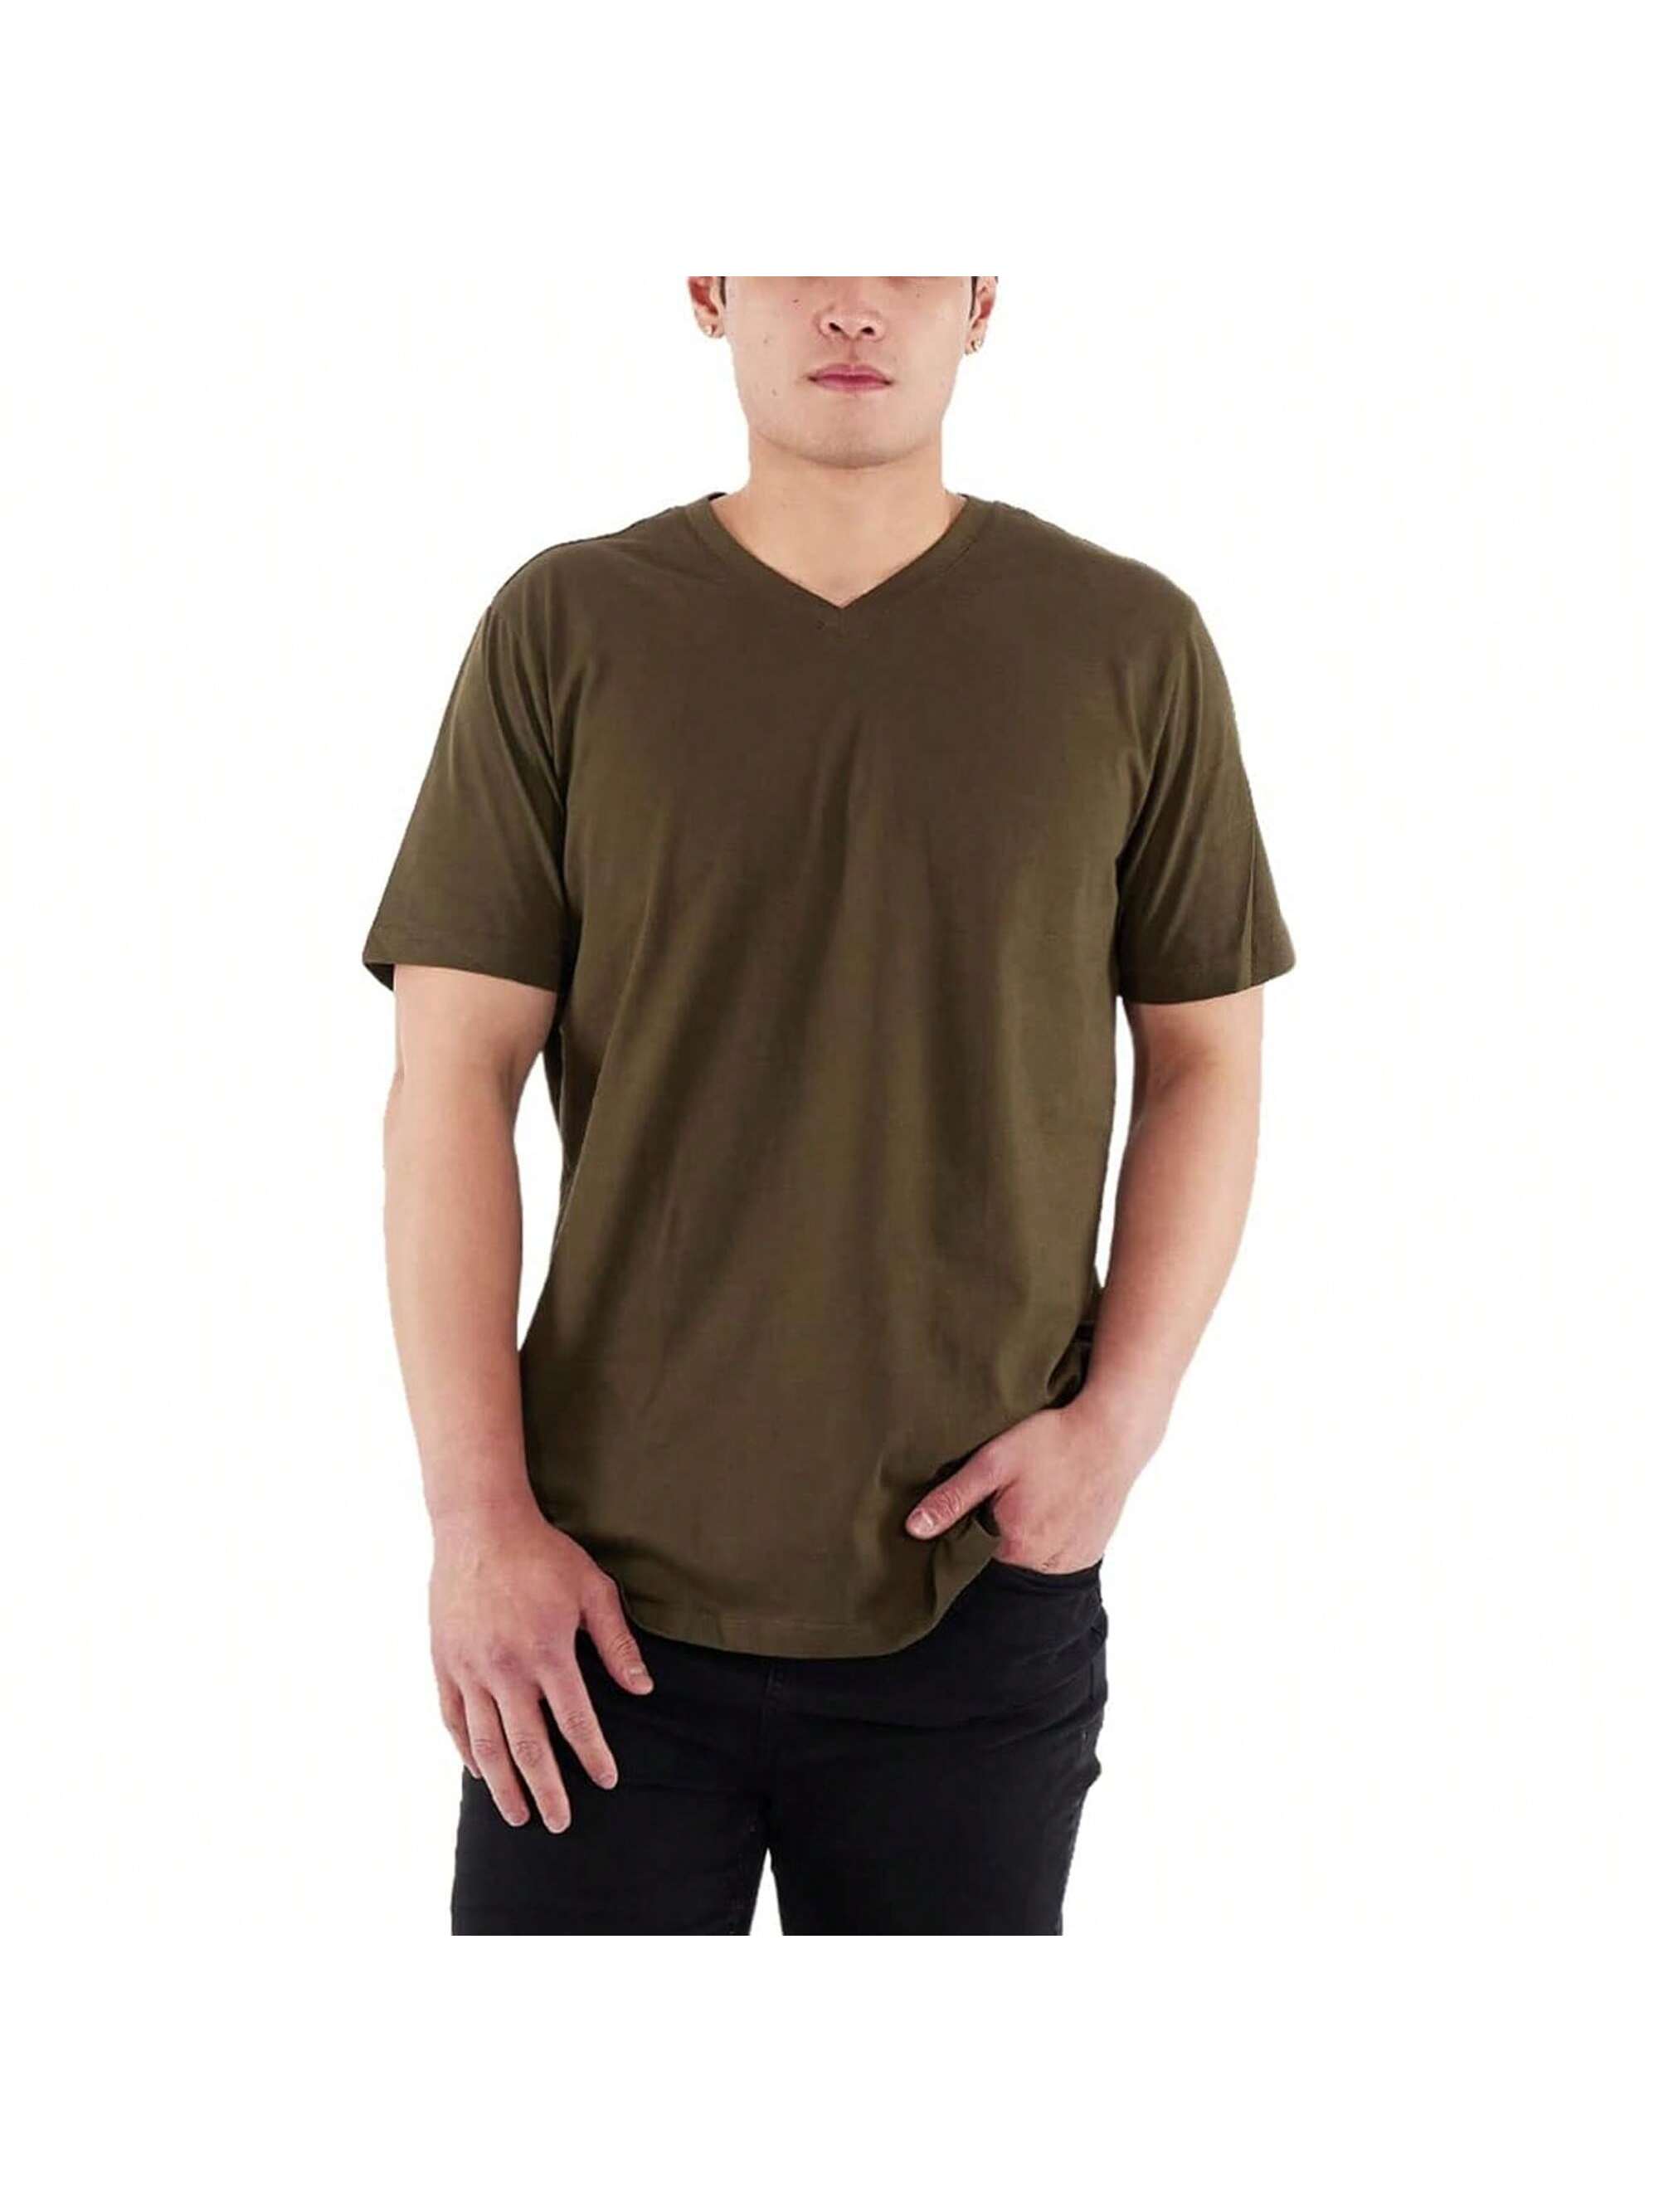 Мужская хлопковая футболка премиум-класса с v-образным вырезом Rich Cotton BLK-M, оливковое